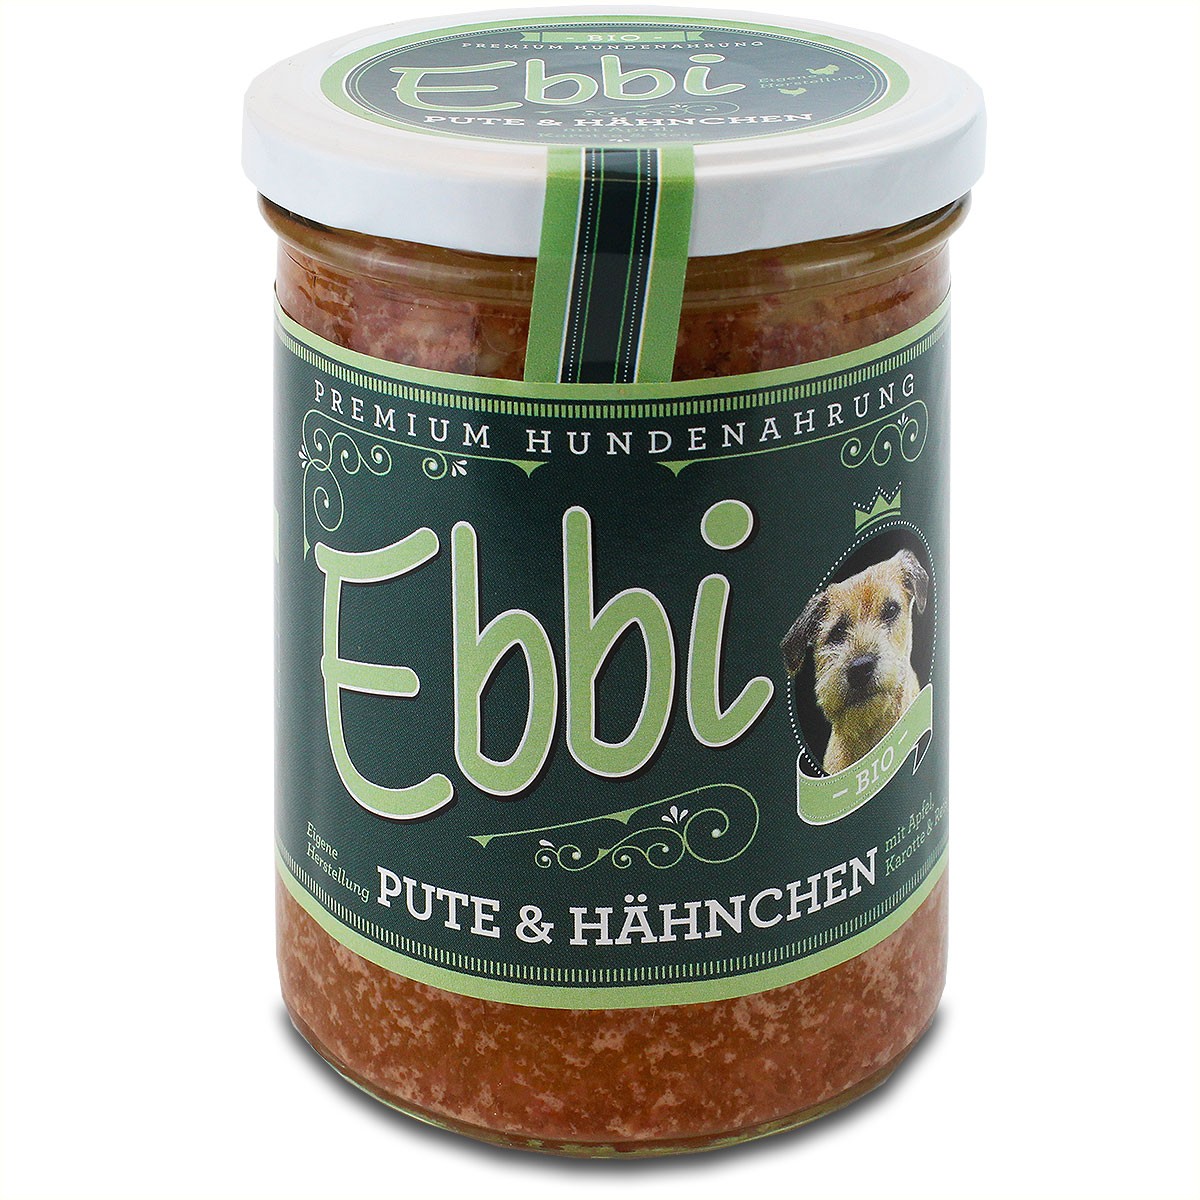 Ebbi "Bio Pute & Hähnchen" für den Hund